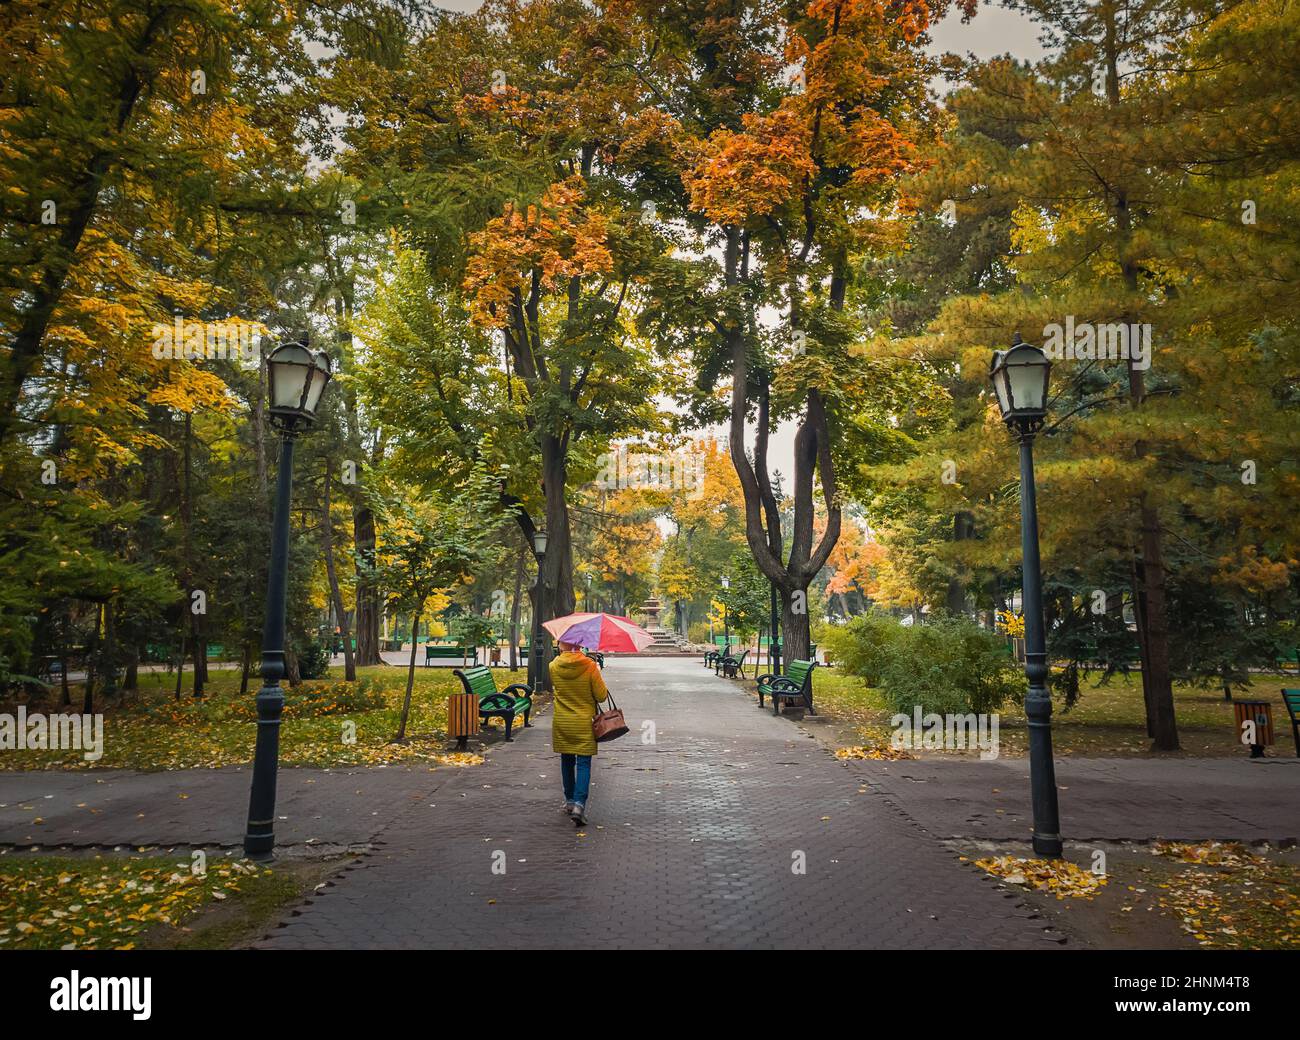 Frau mit Regenschirm, die an einem regnerischen Tag durch die leeren Gassen des Herbstparks läuft. Stille Szene, bunte Blätter auf dem Boden gefallen und Wege von Stephen III der große Platz in Chisinau Stadt, Moldawien. Stockfoto